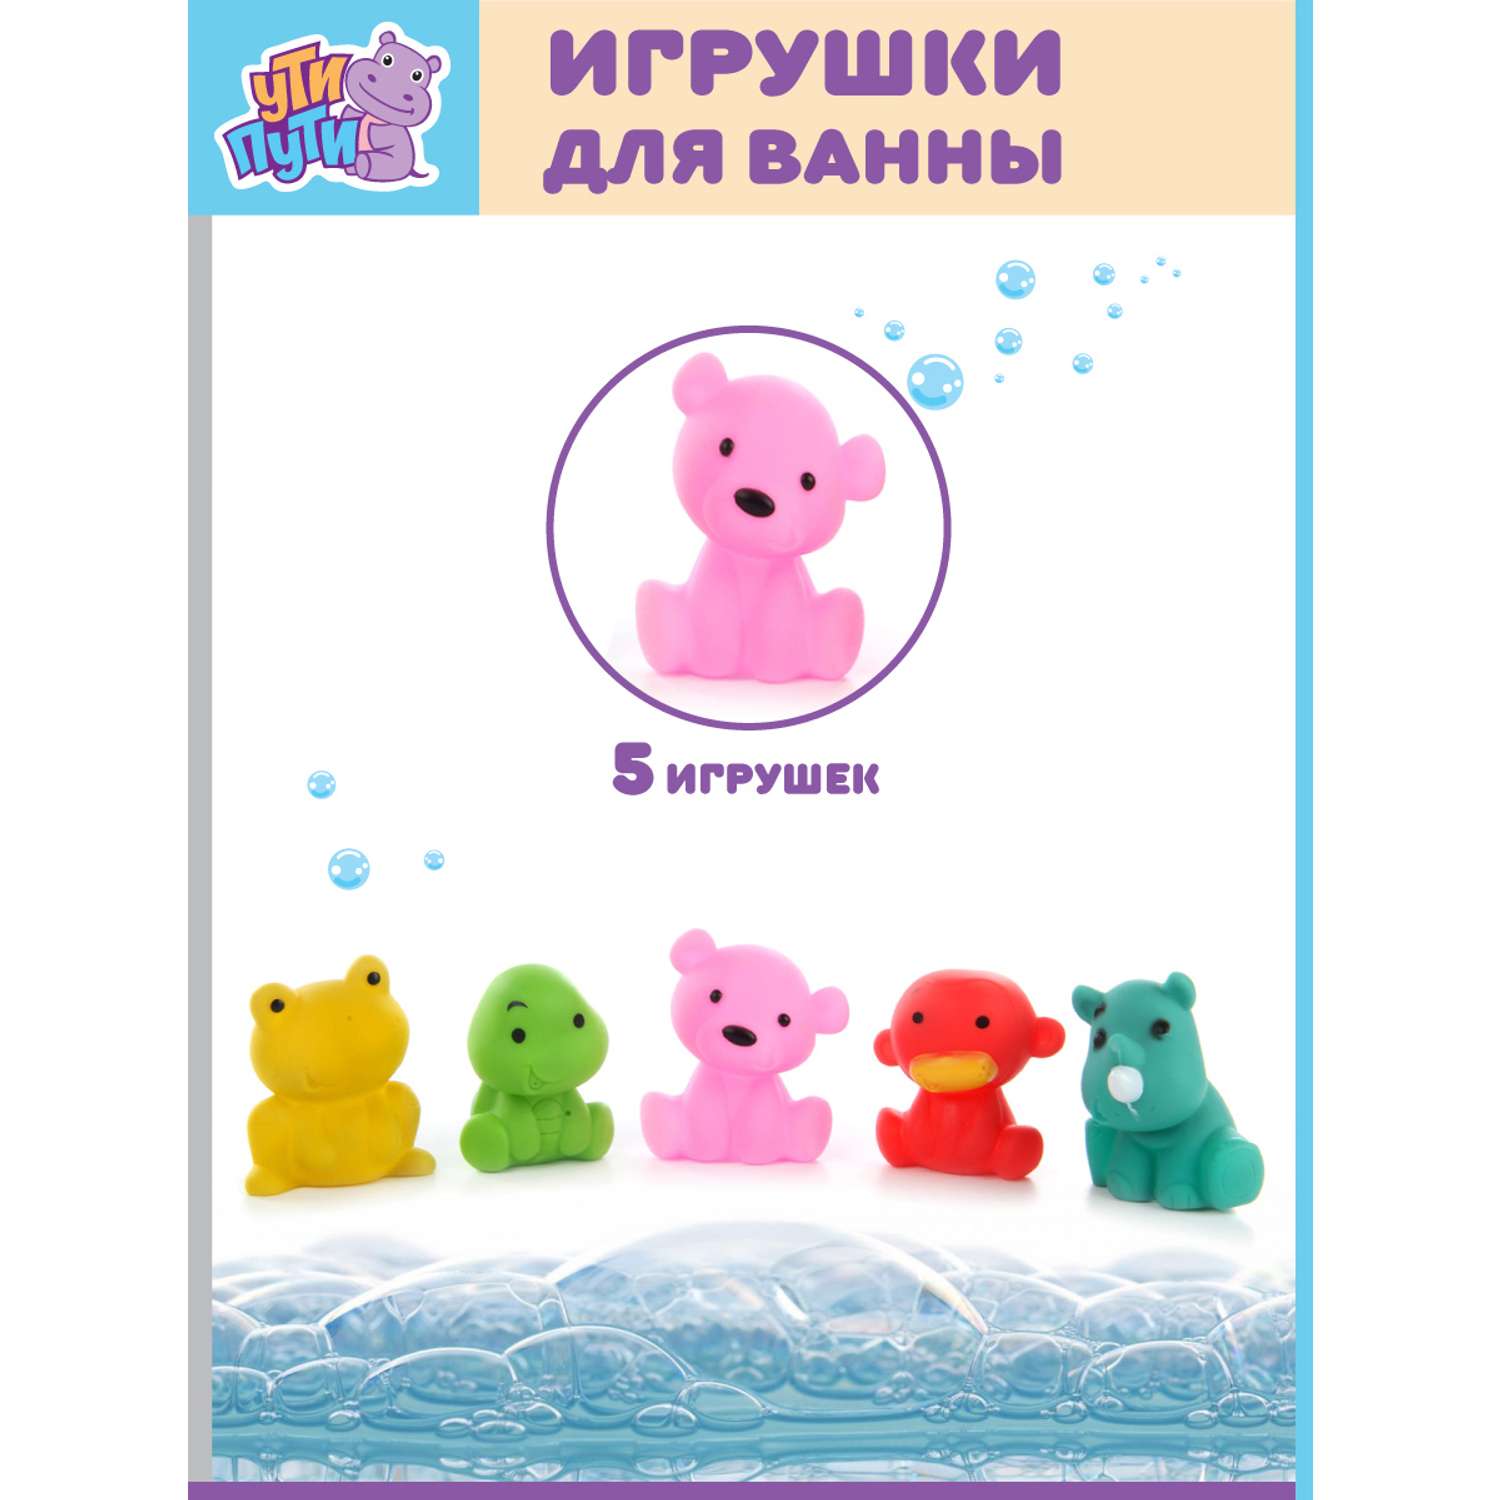 Игрушки для ванны Ути Пути Животные 5 игрушек - фото 1